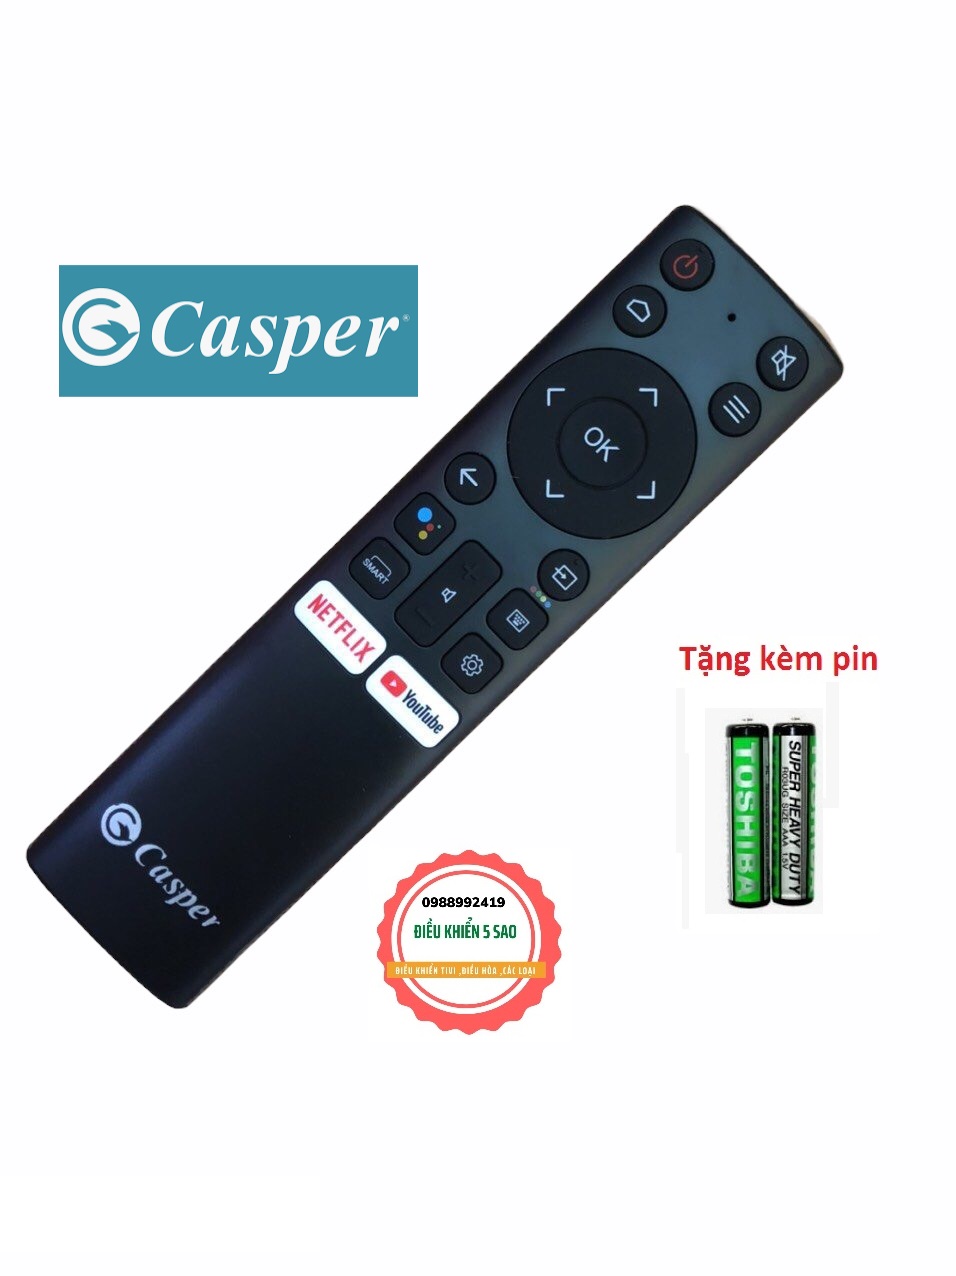 Điều khiển tivi Casper giọng nói chính hãng loại tốt thay thế điều khiển zin theo máy chính hãng - Tặng kèm pin chính hãng - Remote Casper giọng nói - Remote Tivi Casper giọng nói chính hãng có nút NetFlix và Youtube